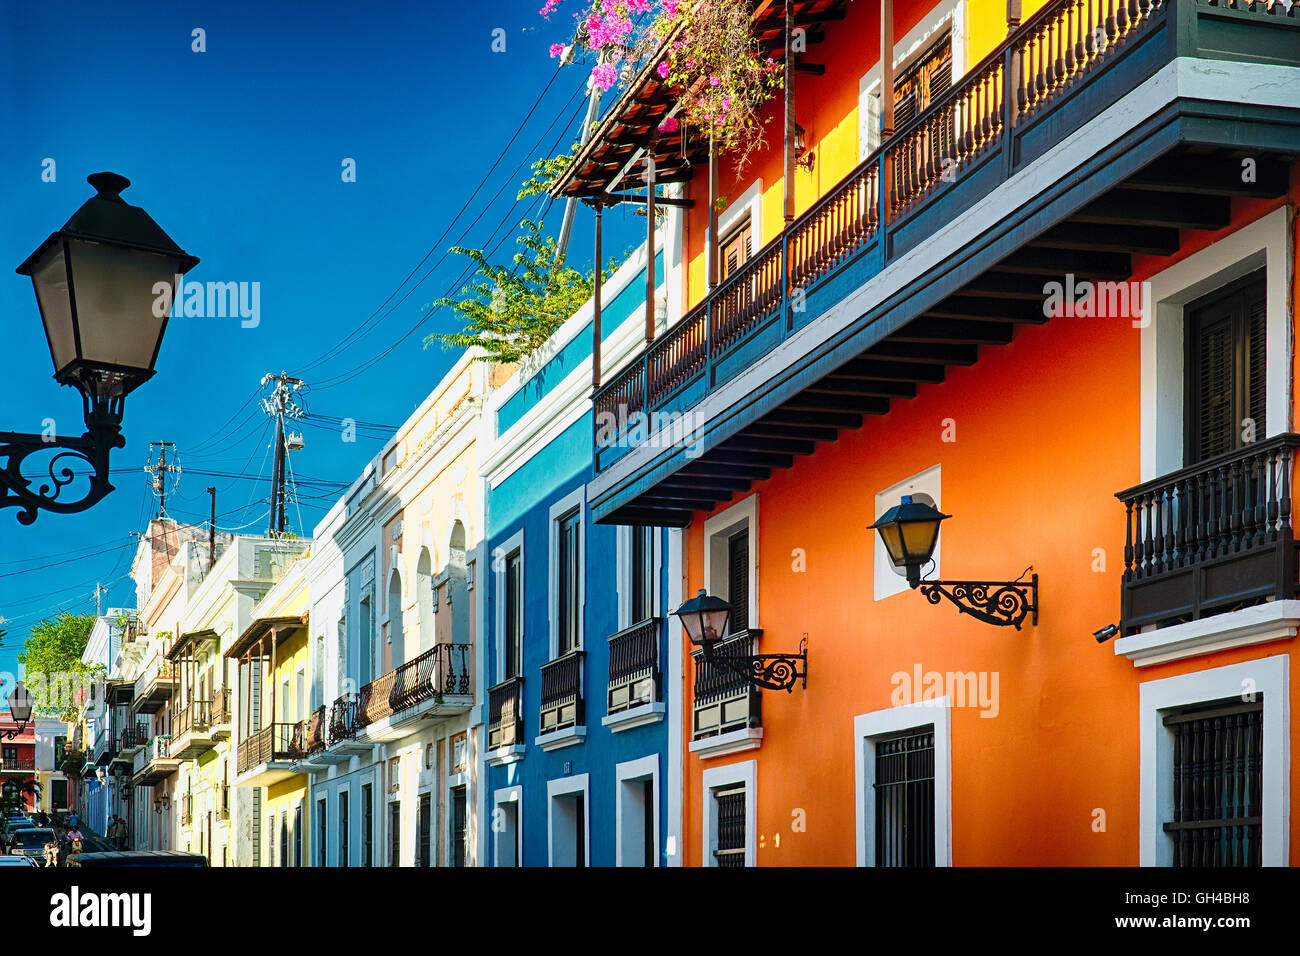 Low Angle View Of Colorful Street avec ses maisons coloniales espagnoles, San Juan, Puerto Rico Banque D'Images